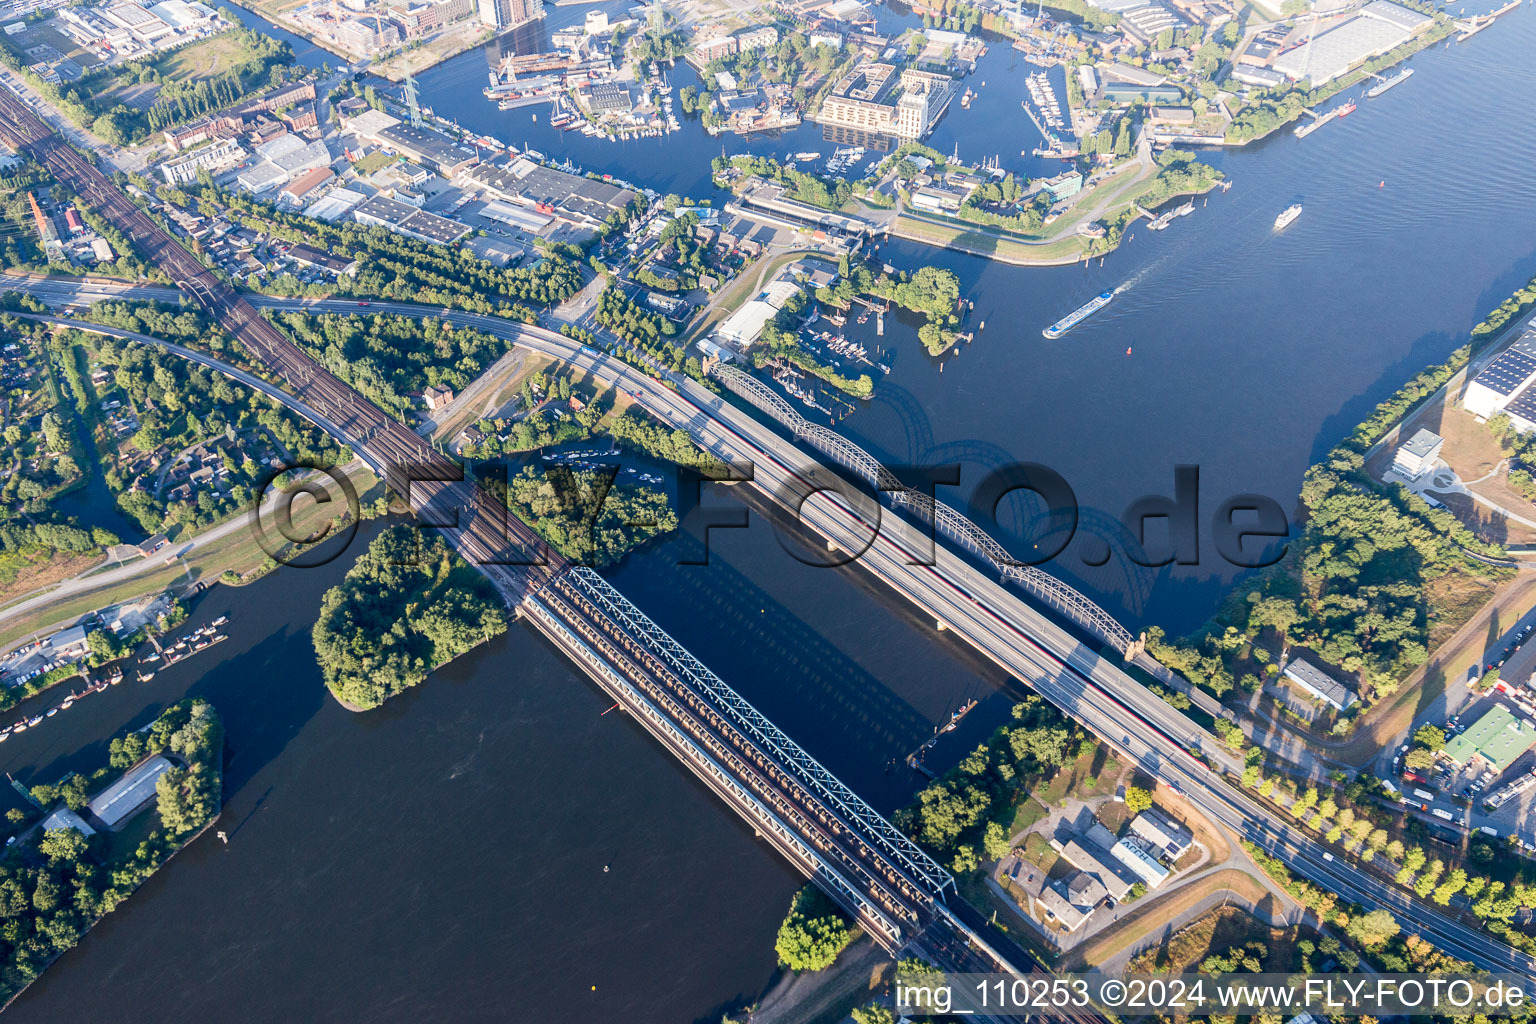 River - bridges: Old Elbe-bridge of Harburg, Bridge of the 17. June, Motorwaybridge of A253 and Railwaybridge crossing the southern Elbe in Hamburg, Germany